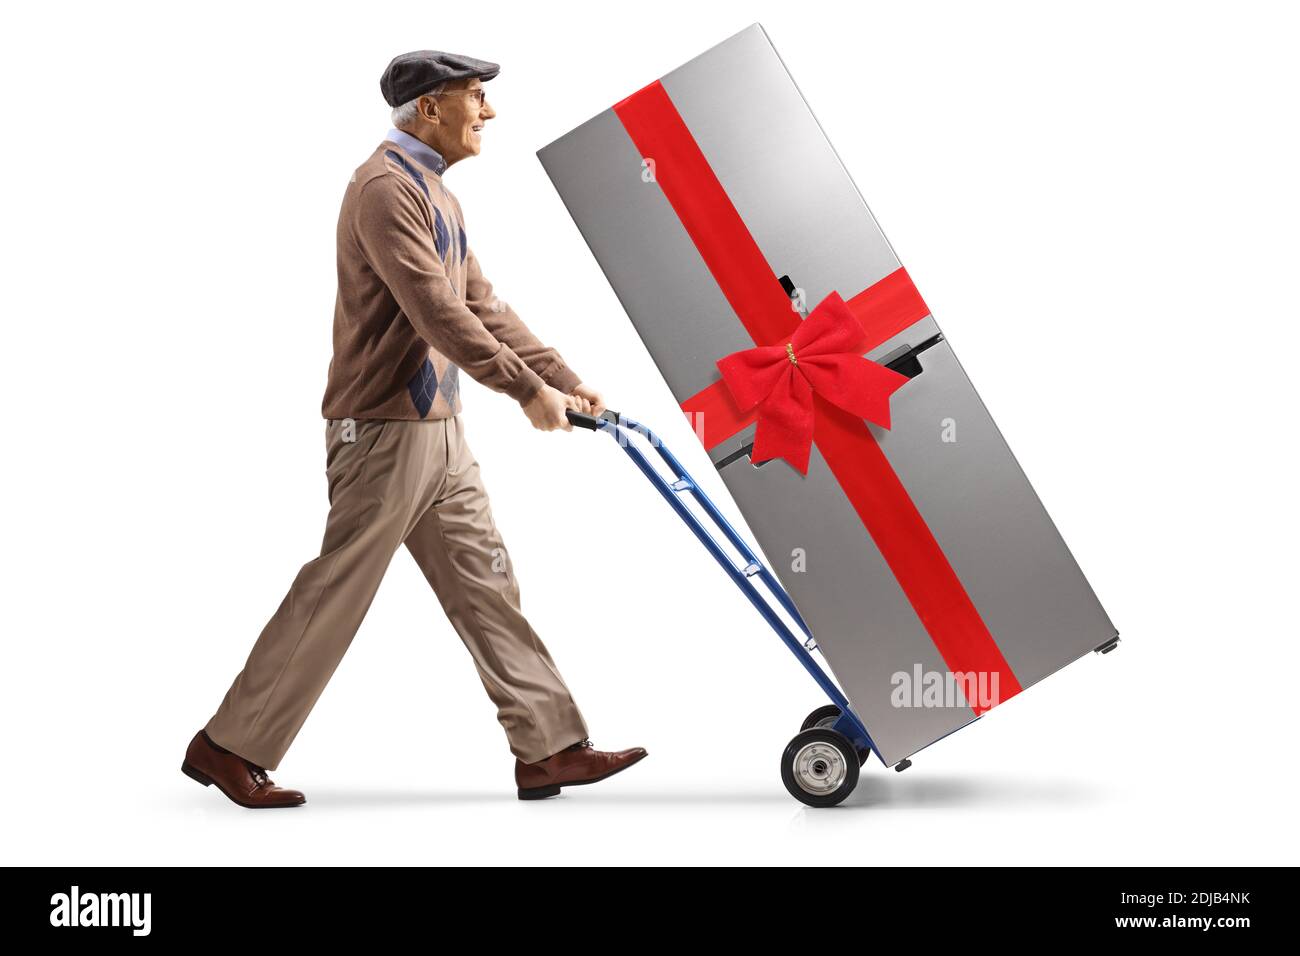 Uomo anziano che spinge un frigorifero con un arco rosso un carrello a mano isolato su sfondo bianco Foto Stock